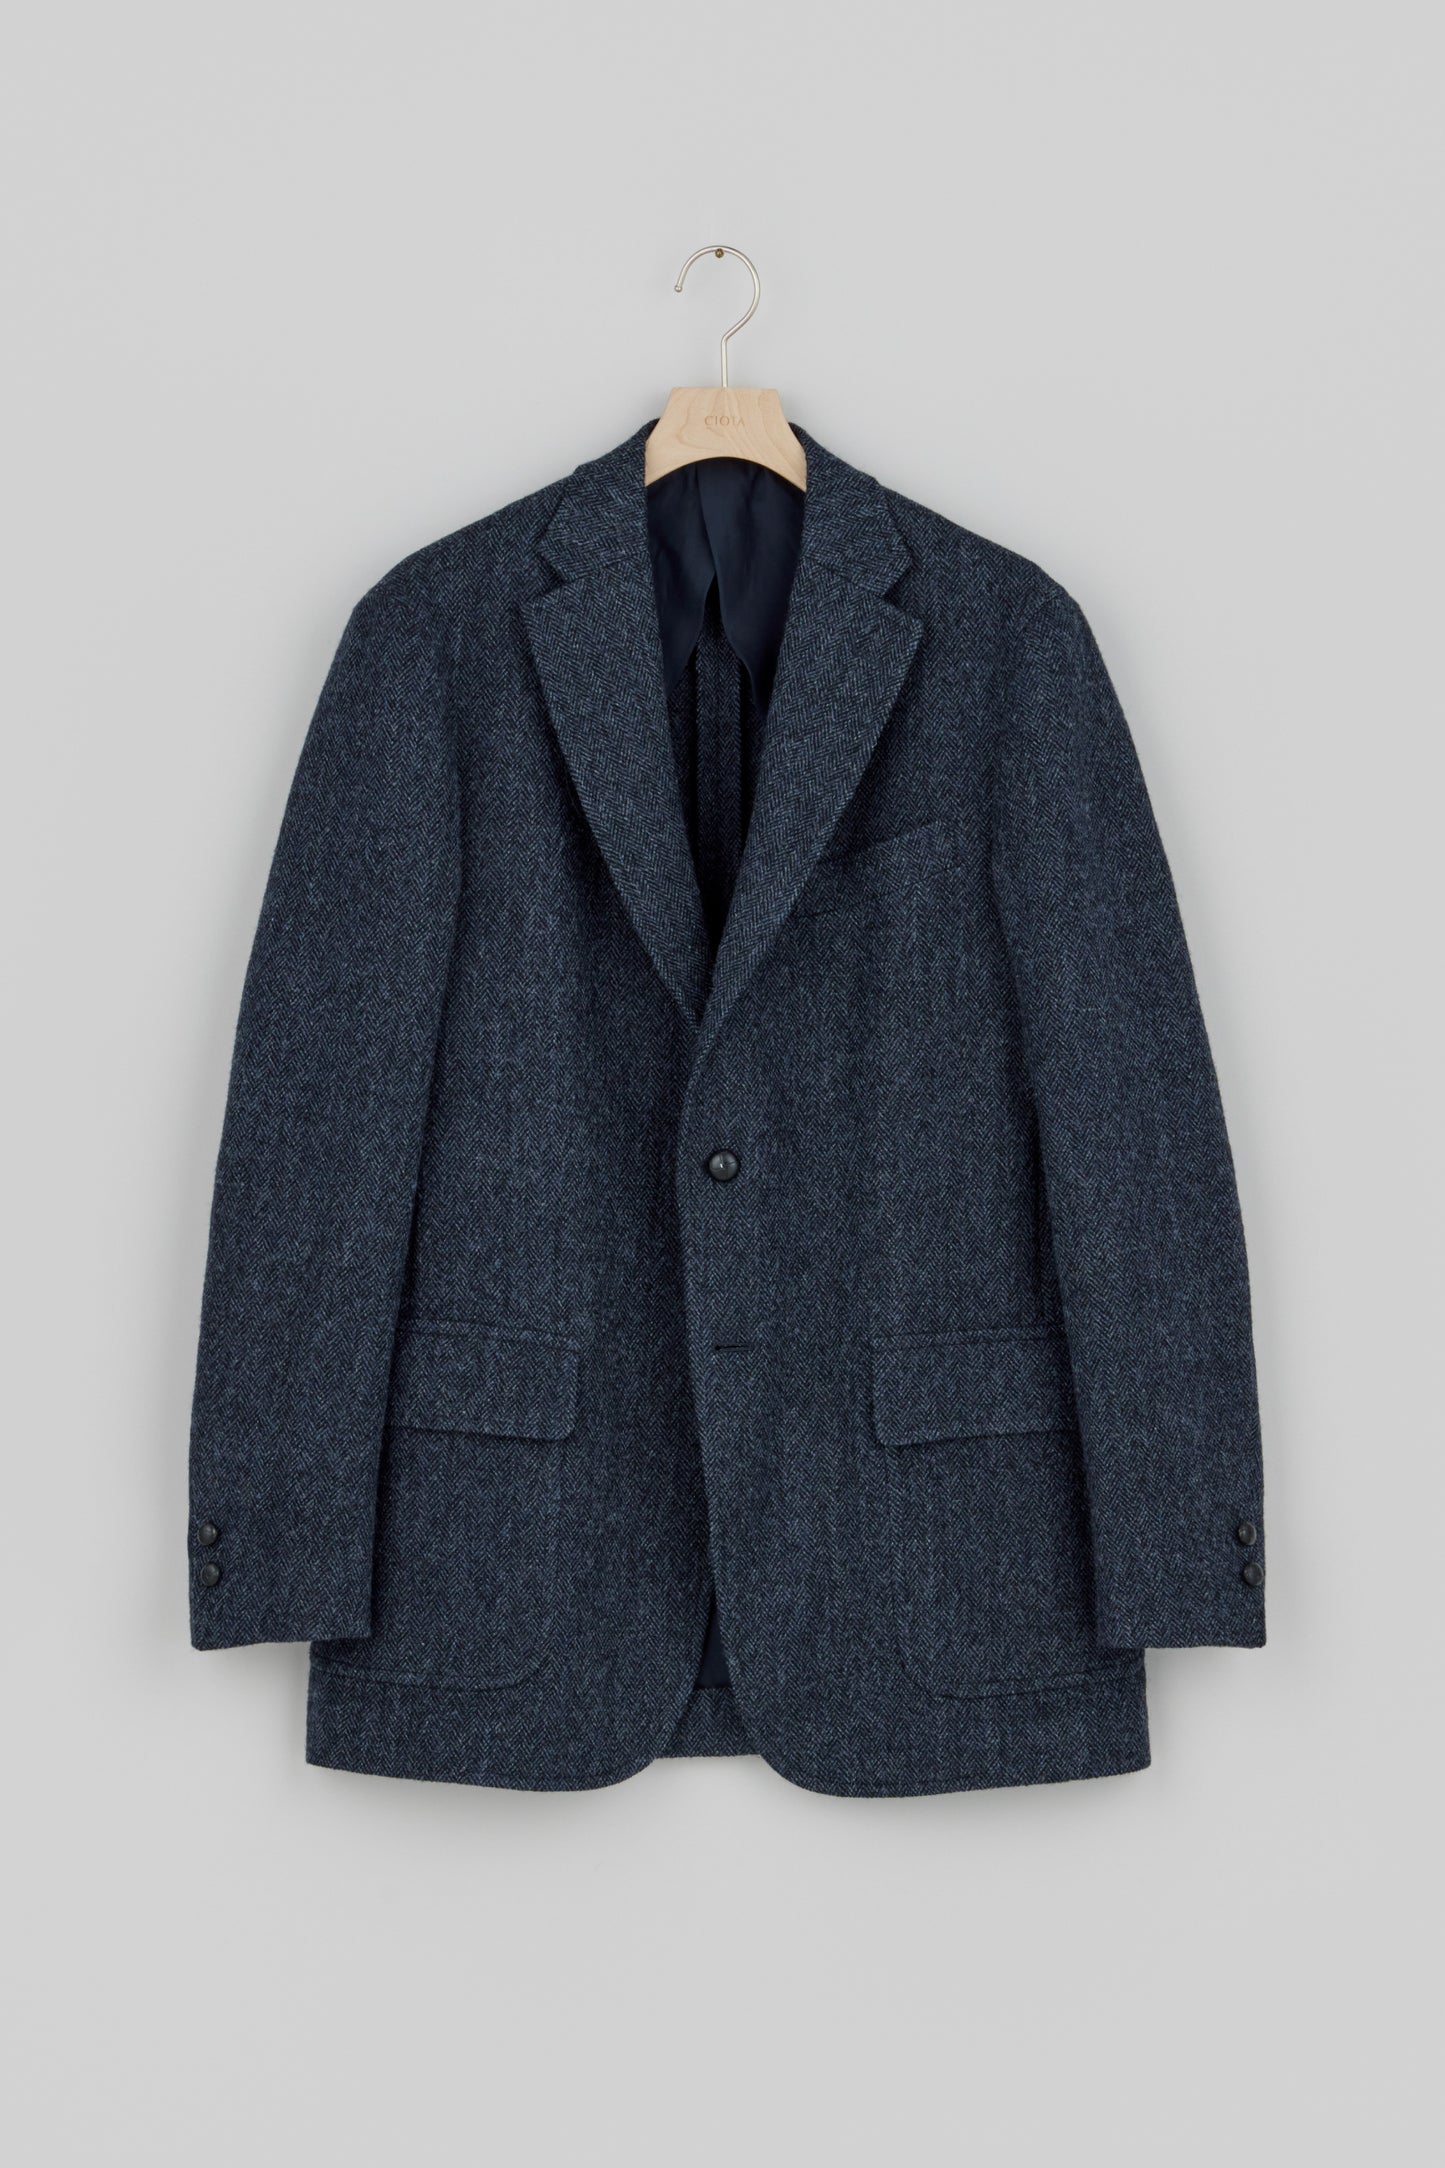 CIOTA × J.PRESS Herringbone Tweed Jacket